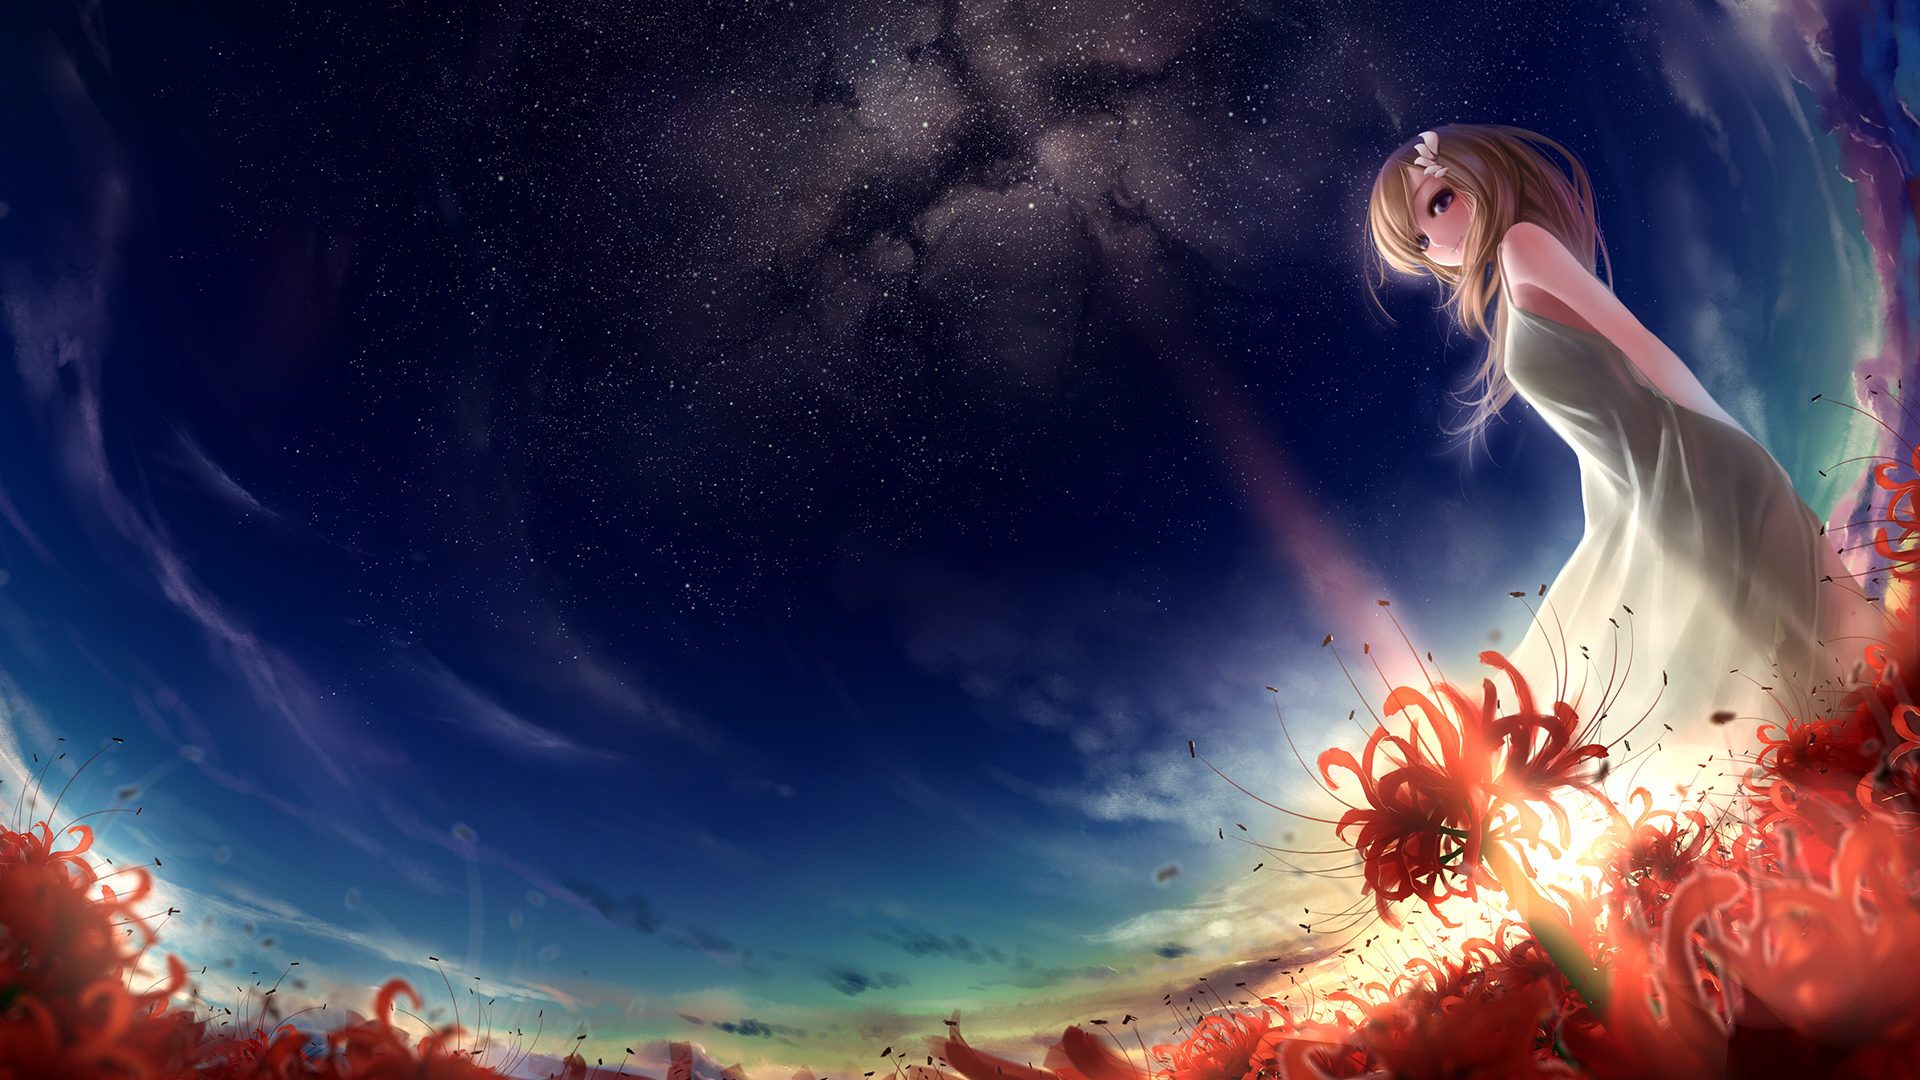 Art munashichi girl field flowers lycoris radiata red sunset stars